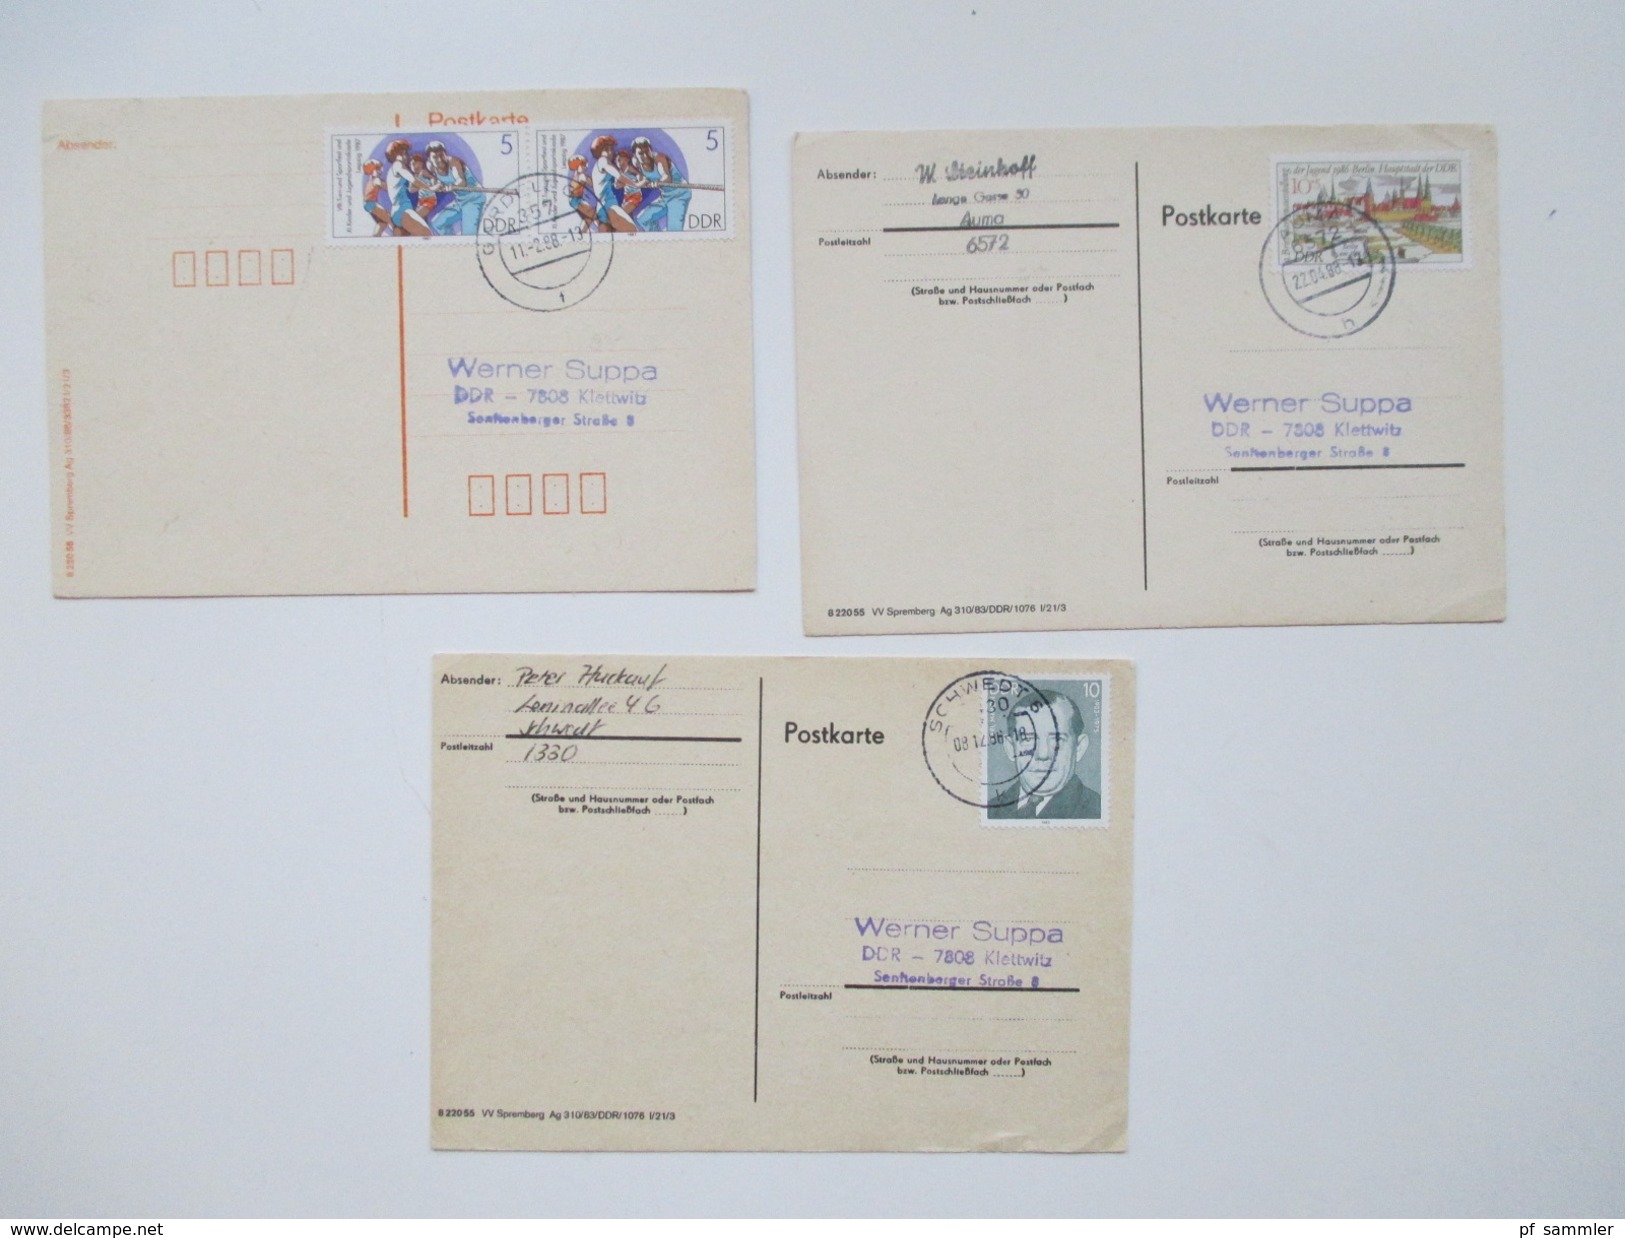 DDR 1986 - 88 Postkarten 215 Stück Sondermarken / Schmalspurbahn Zusammendrucke viele saubere Tagesstempel. Bedarf!